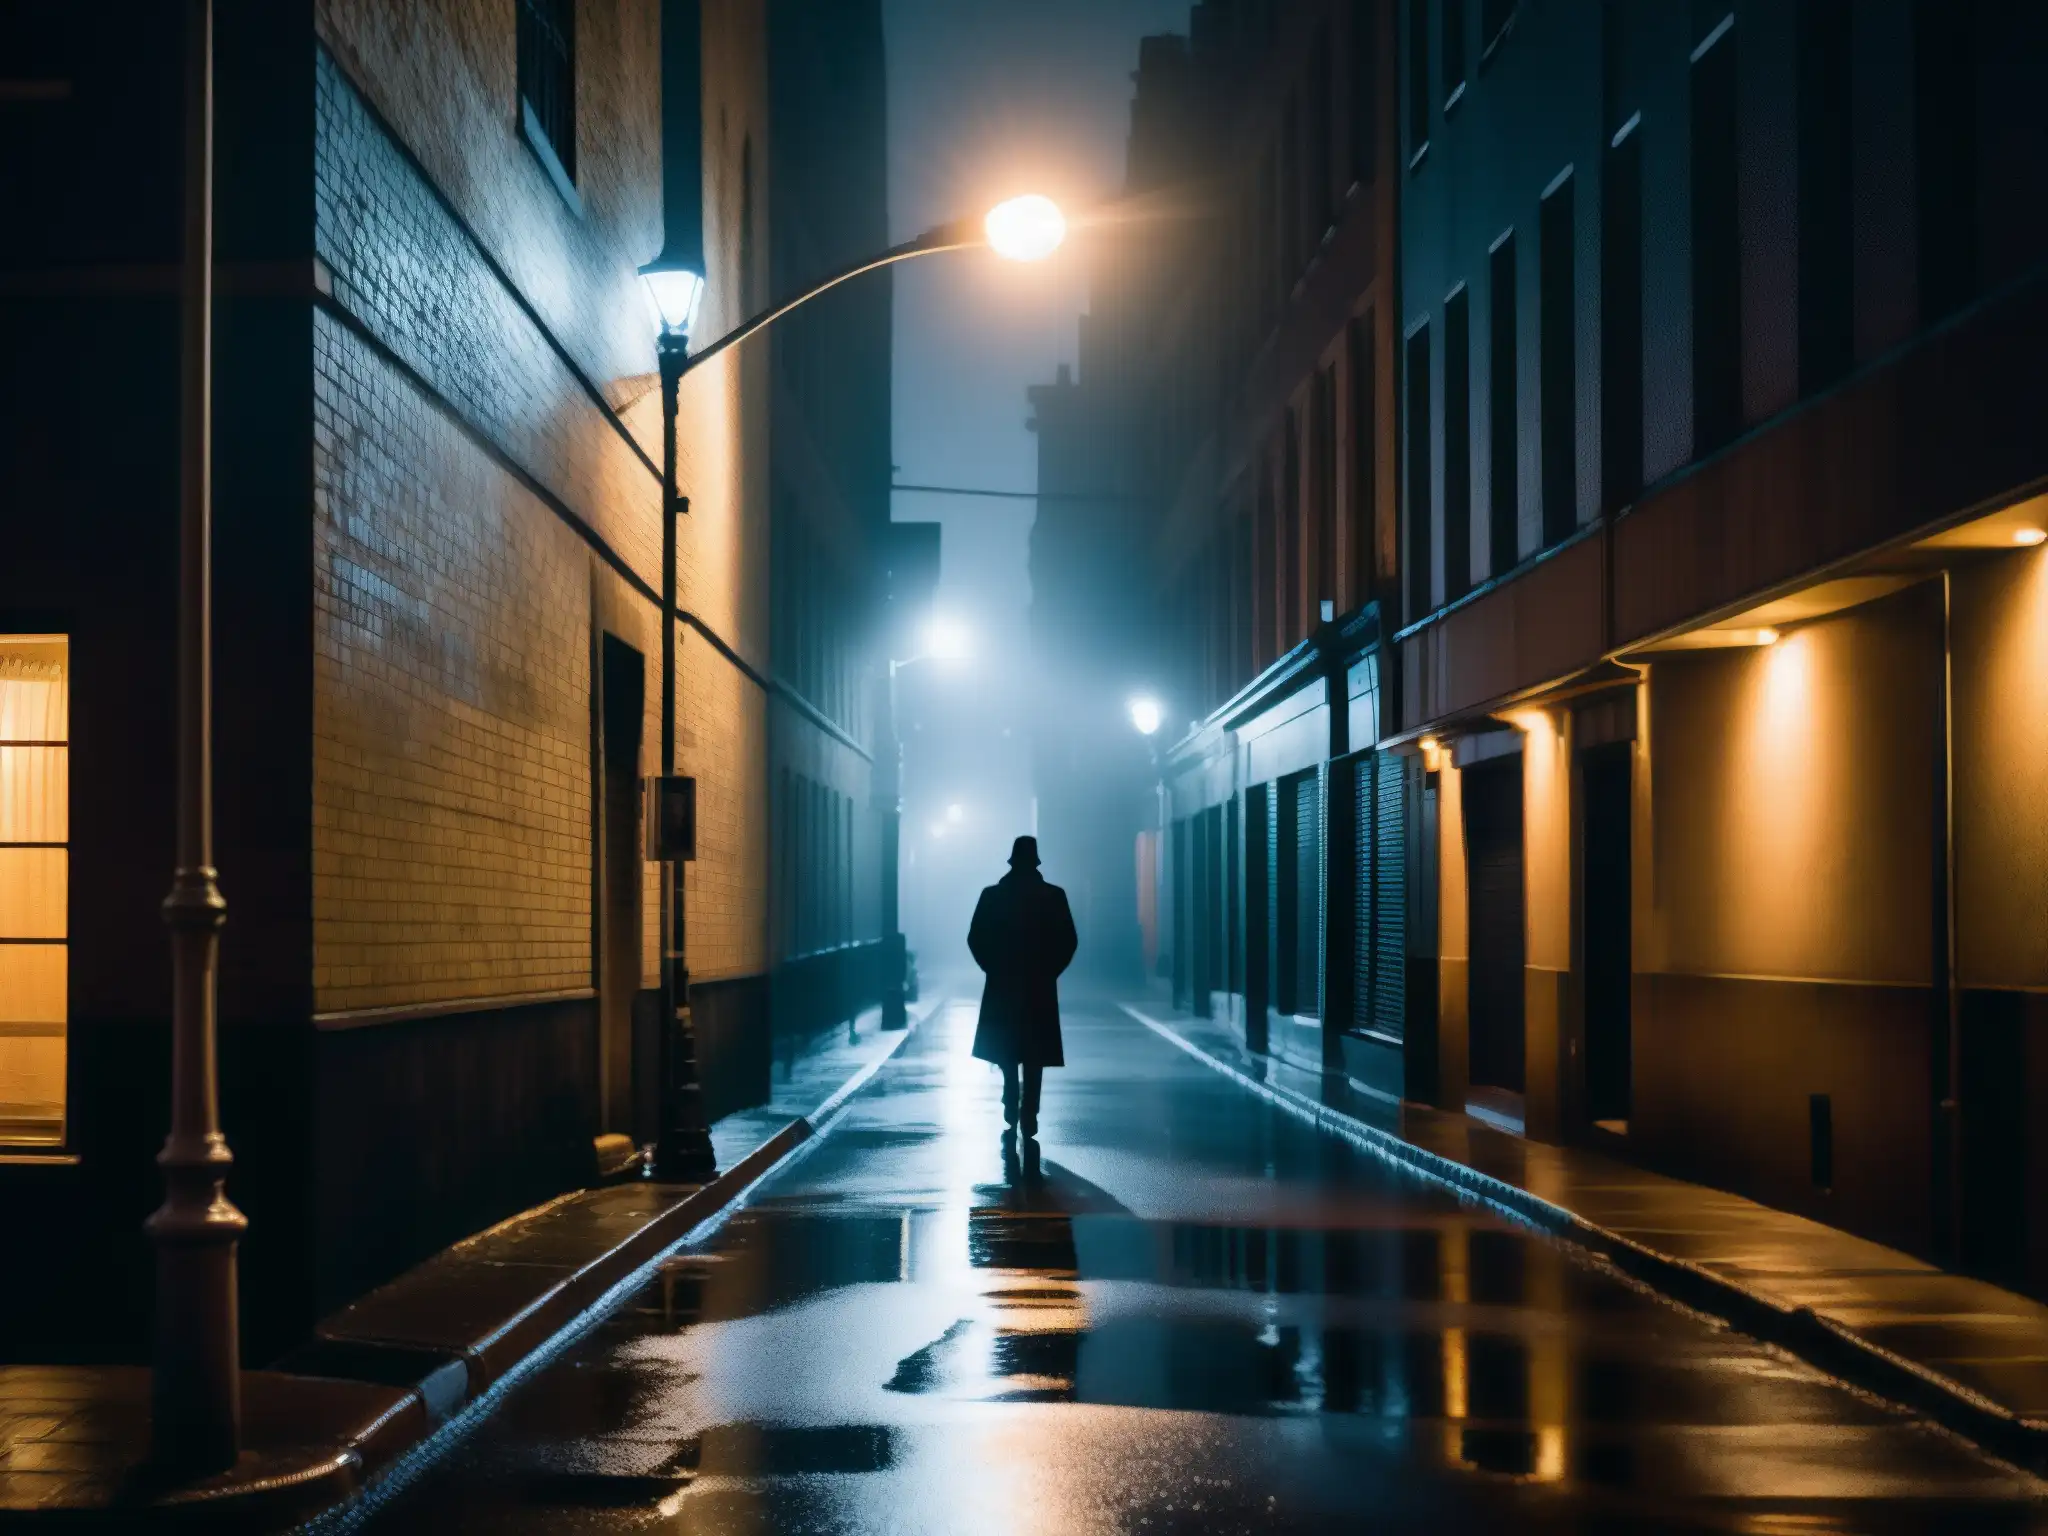 Un misterioso callejón oscuro por la noche con una figura solitaria bajo una farola parpadeante, creando sombras largas en el pavimento mojado